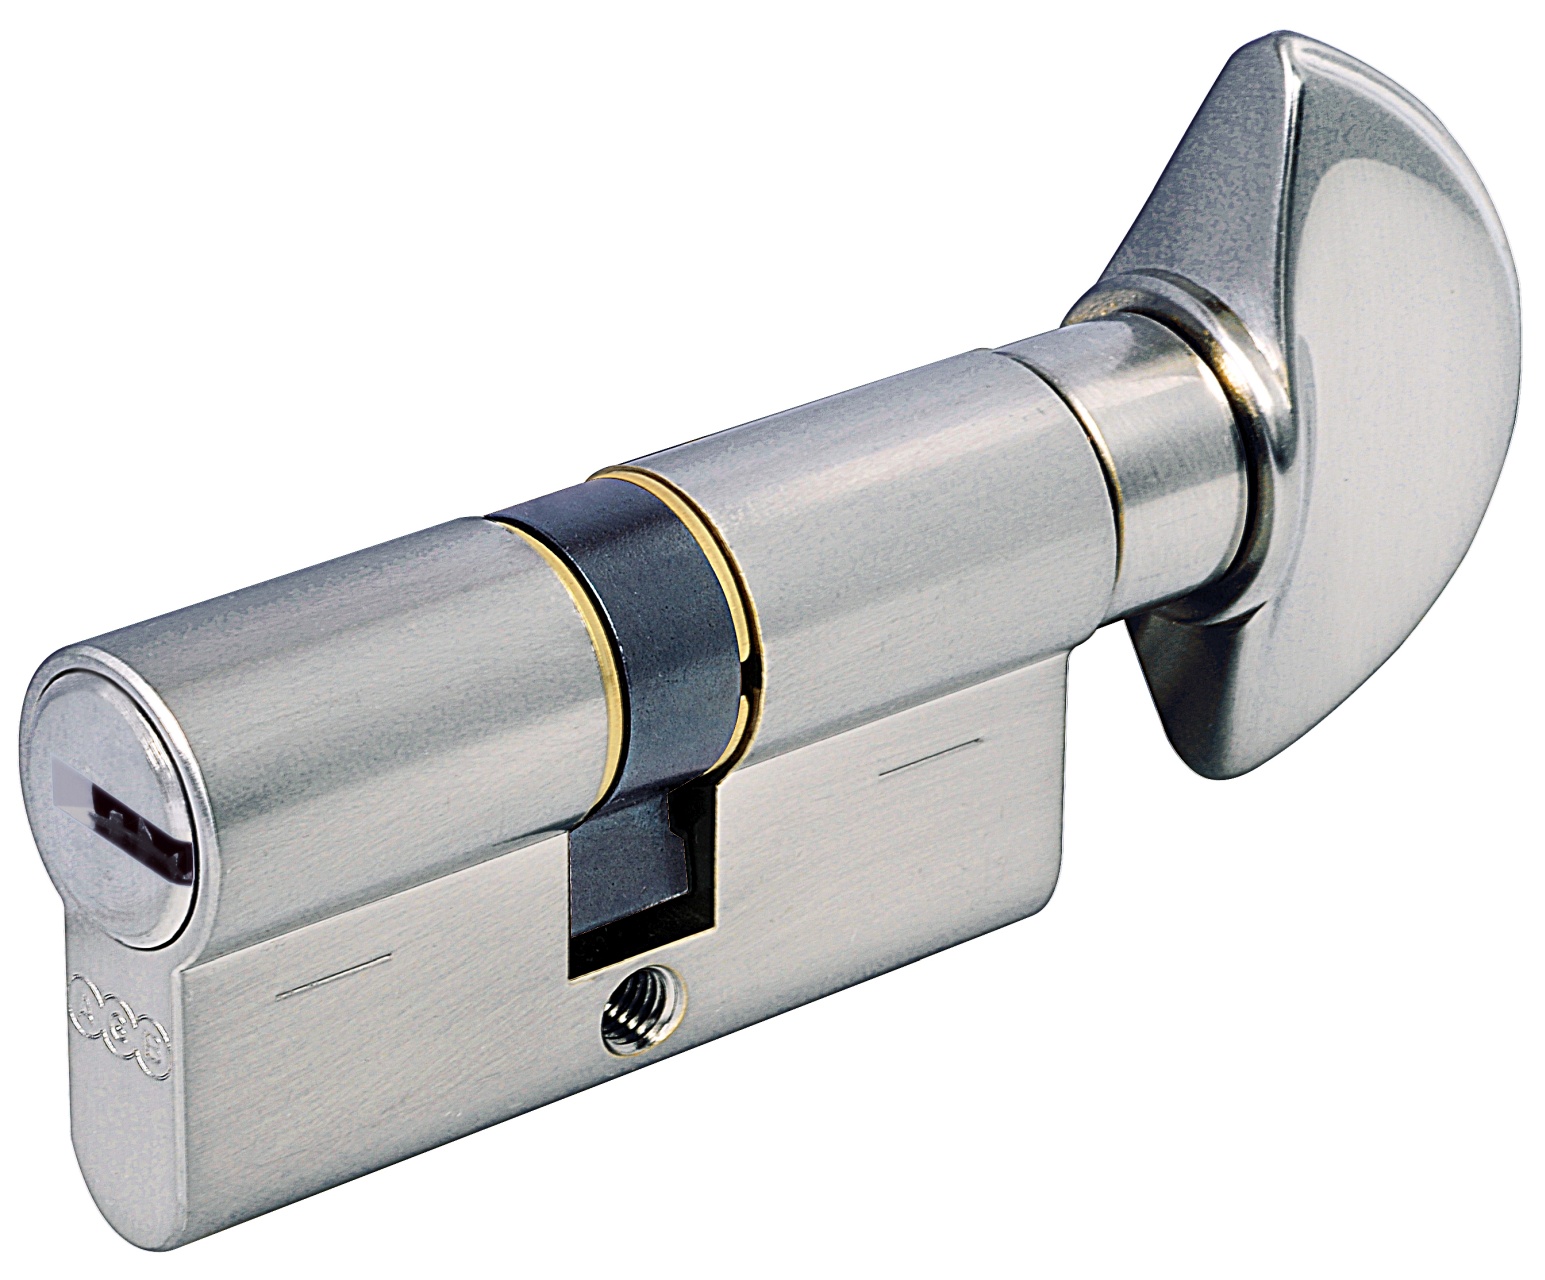 AGB -  Cilindro SCUDO 5000 PS frizionato anti bamping con chiave e pomolo - col. NICHELATO OPACO - lunghezza 60 - misura 25 - 10 - 25